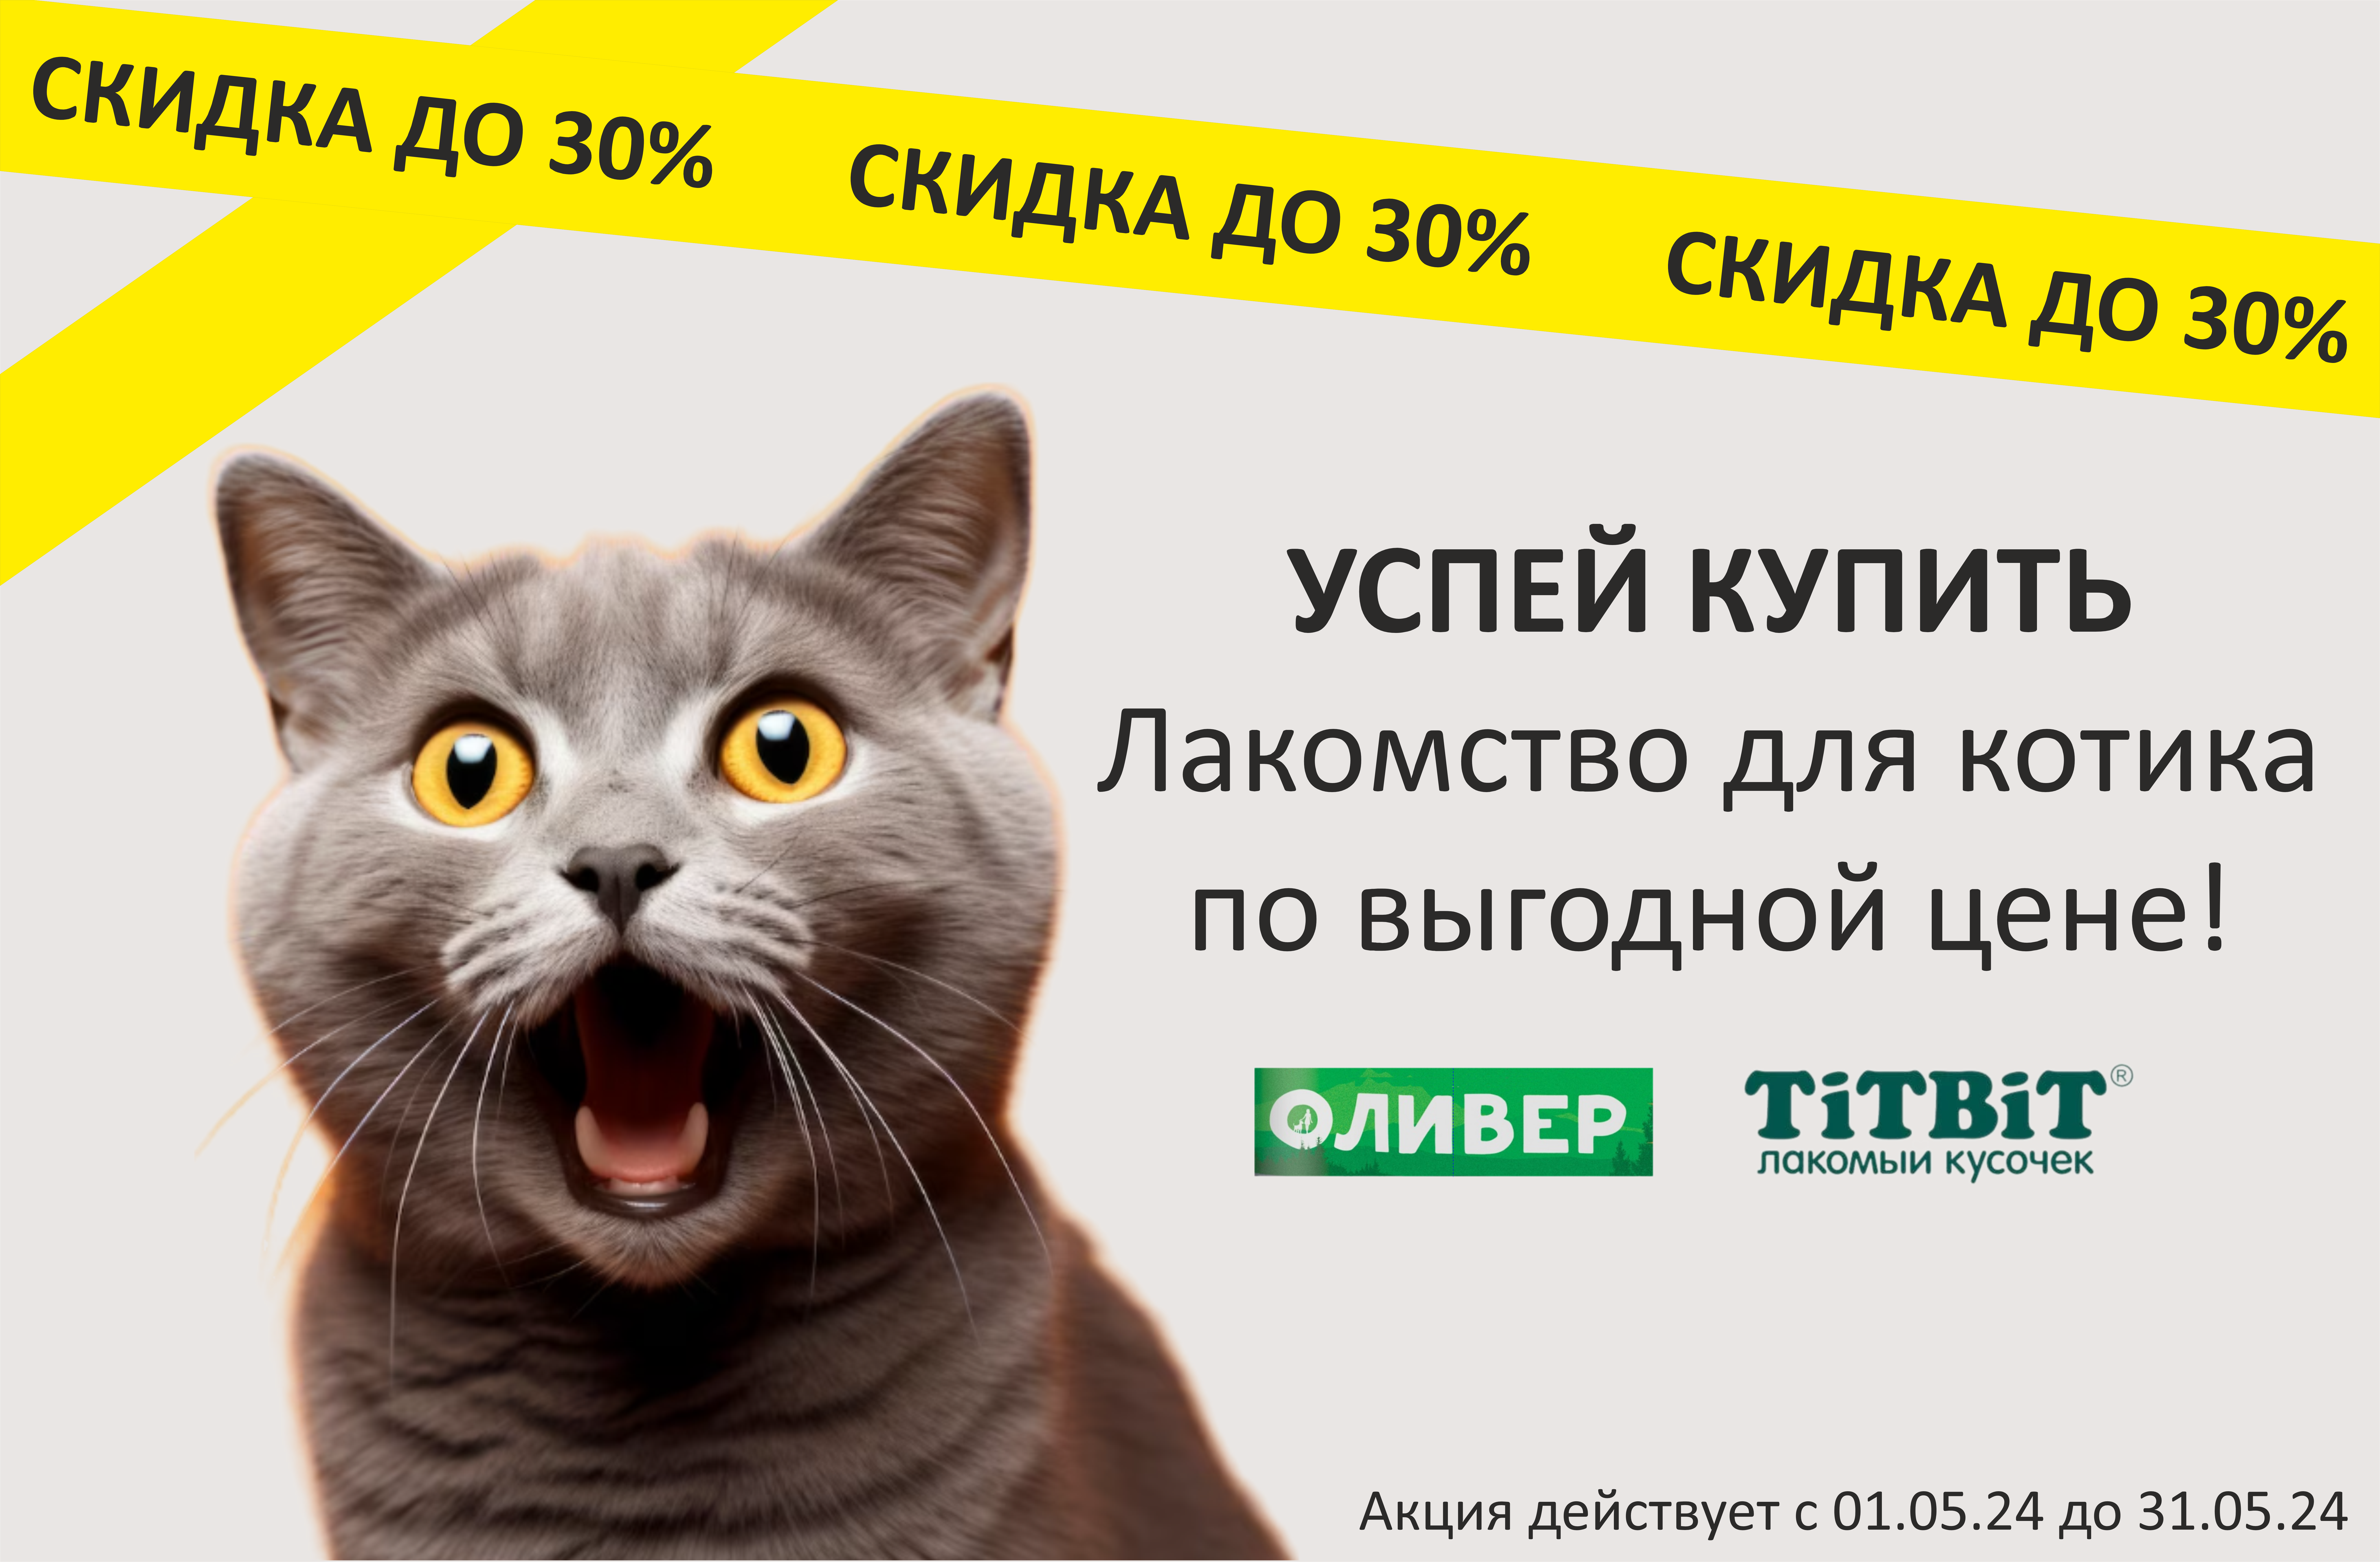 Лакомства для кошек со скидкой до 30%